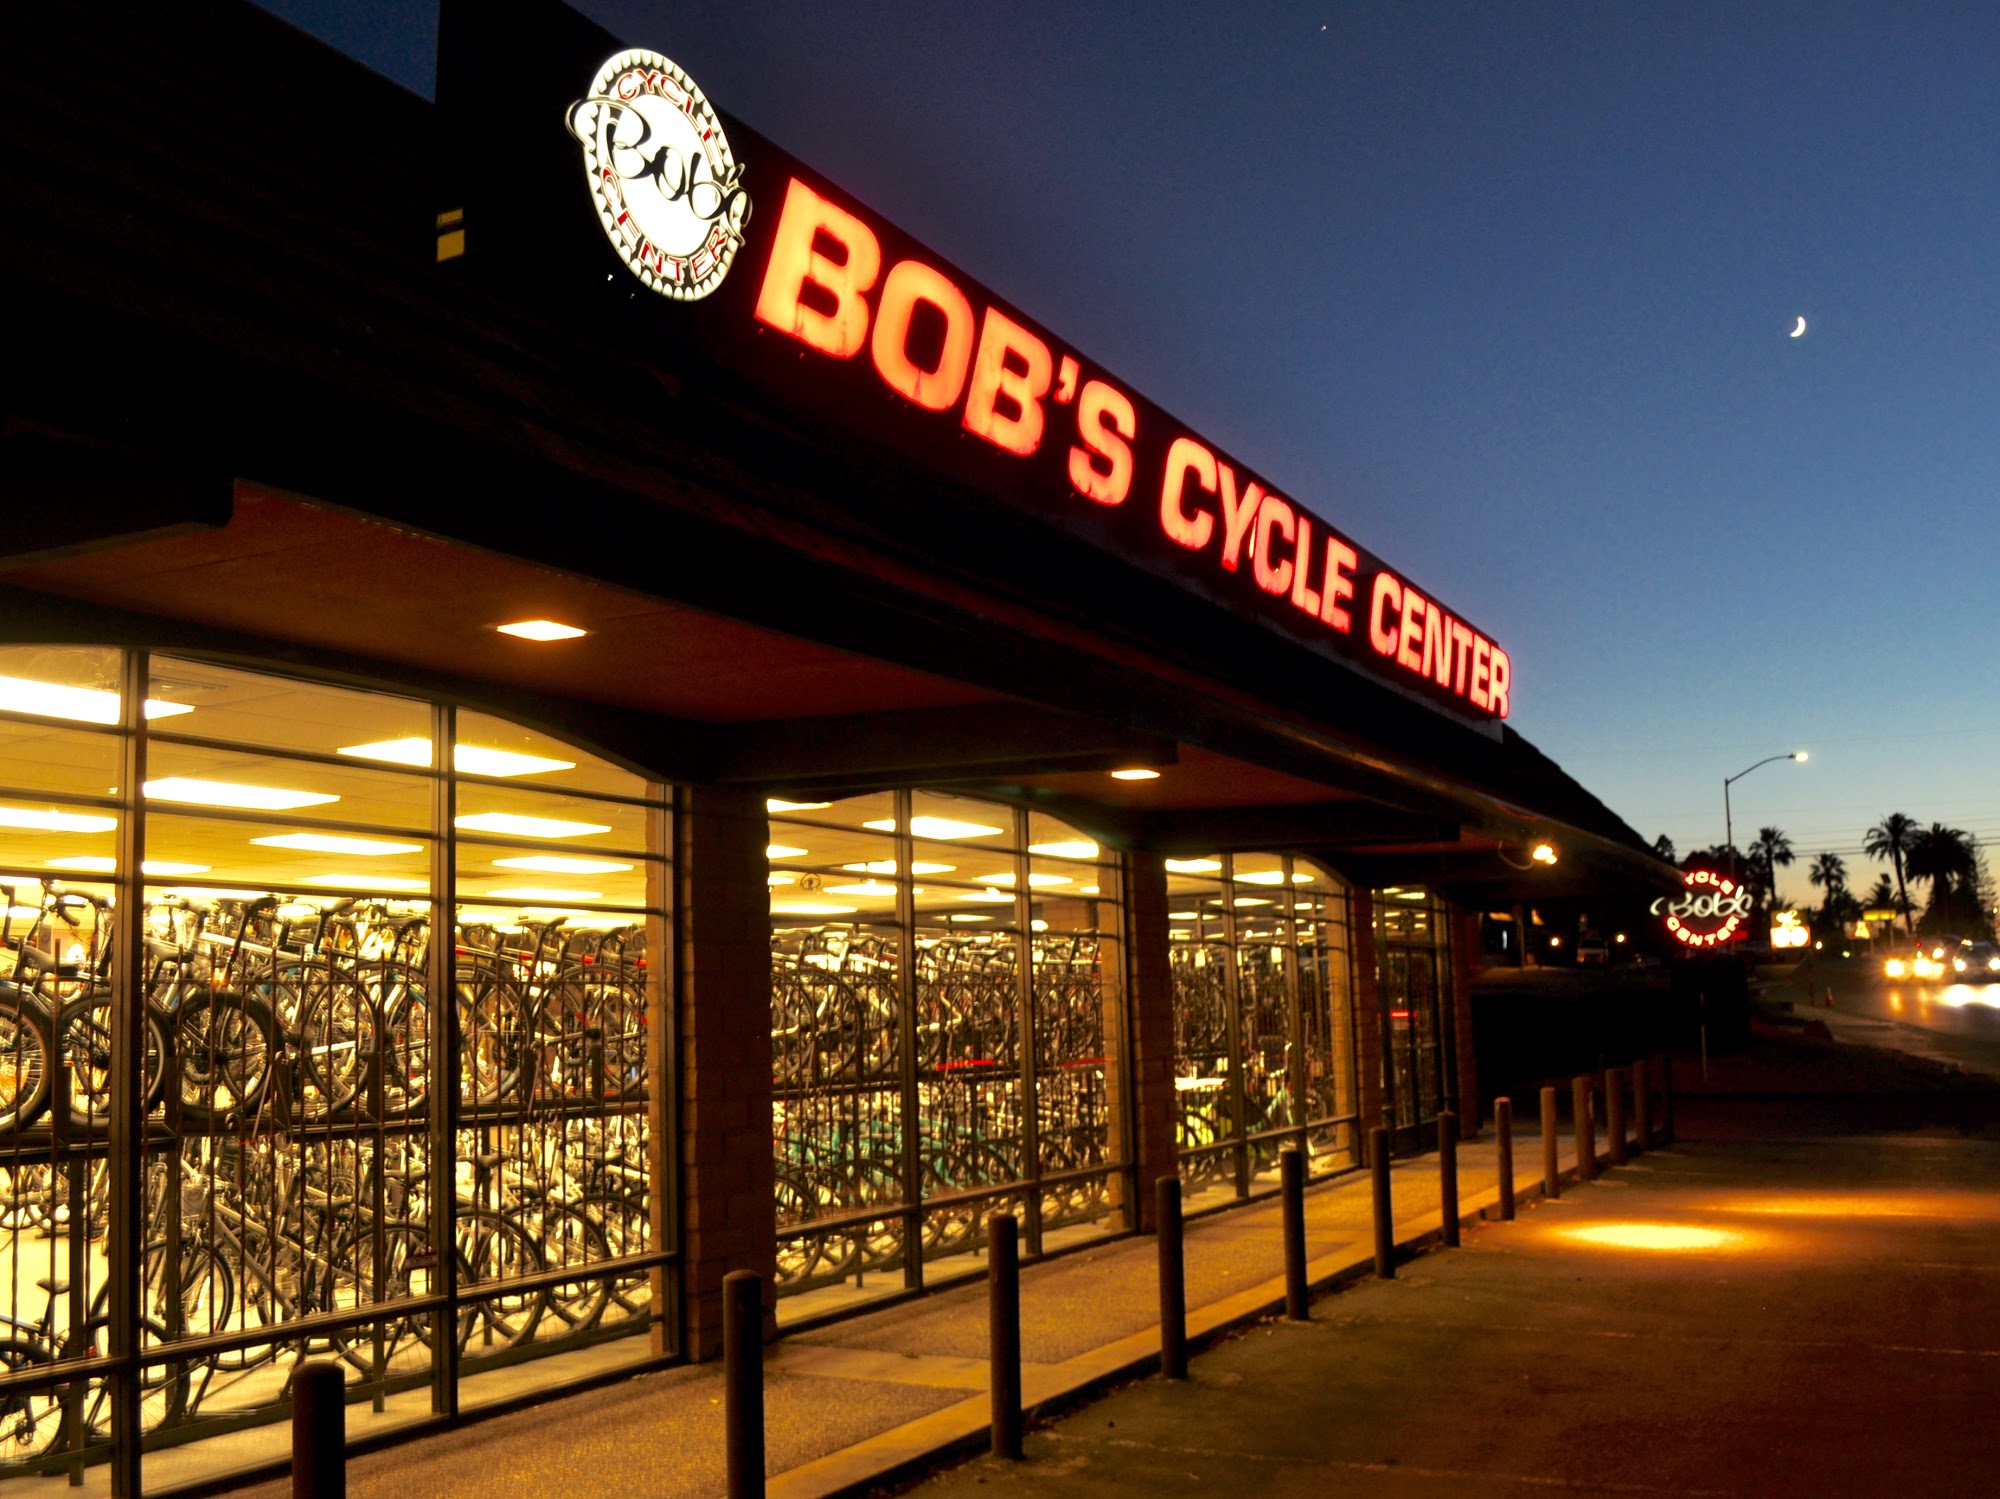 Bob's Cycle Center